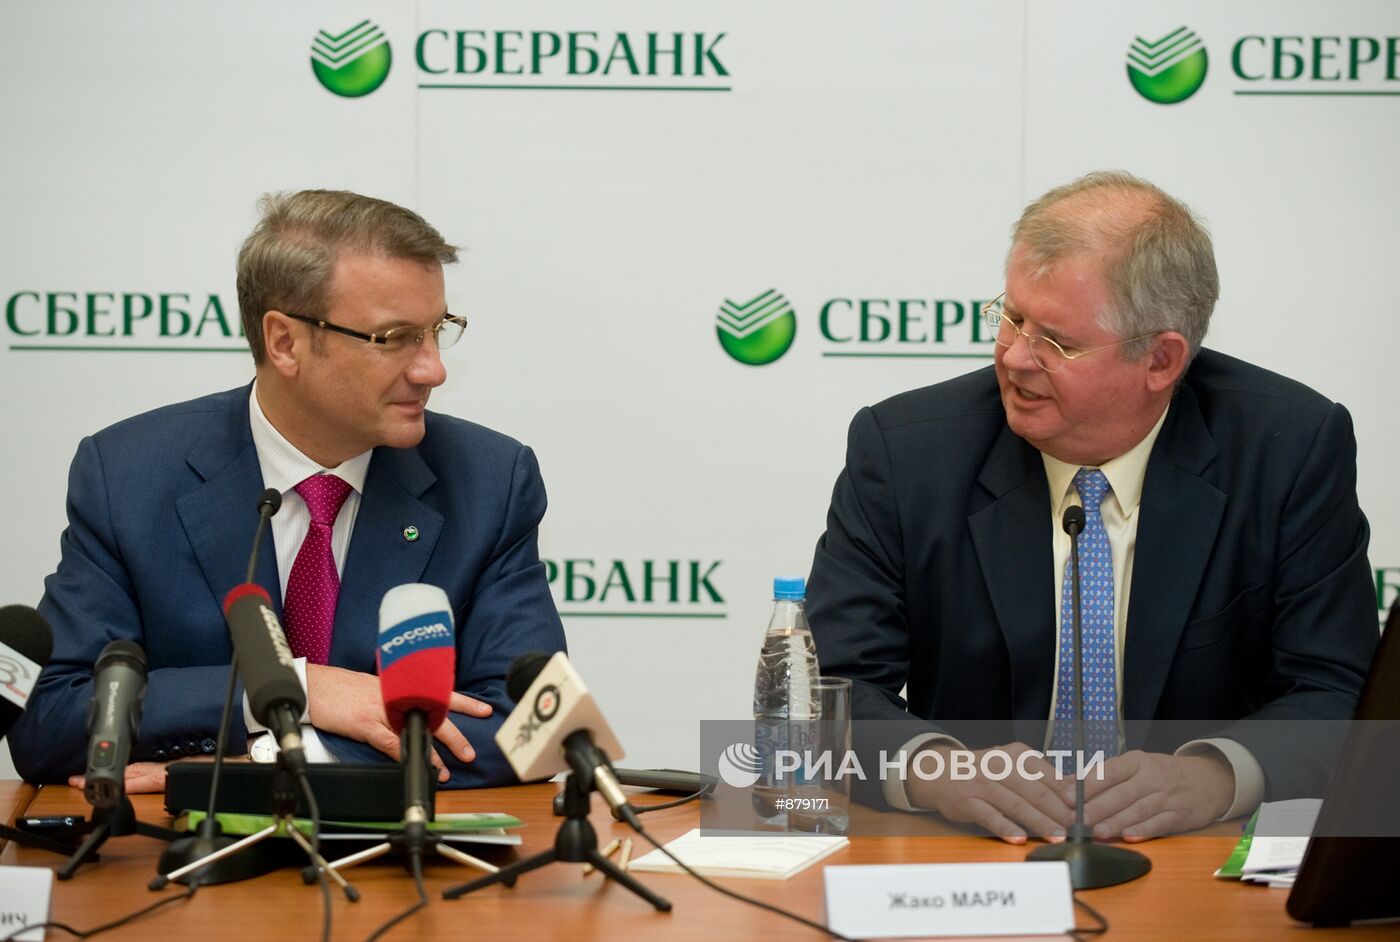 Подписание соглашения между Сбербанком РФ и "Тройкой Диалог"